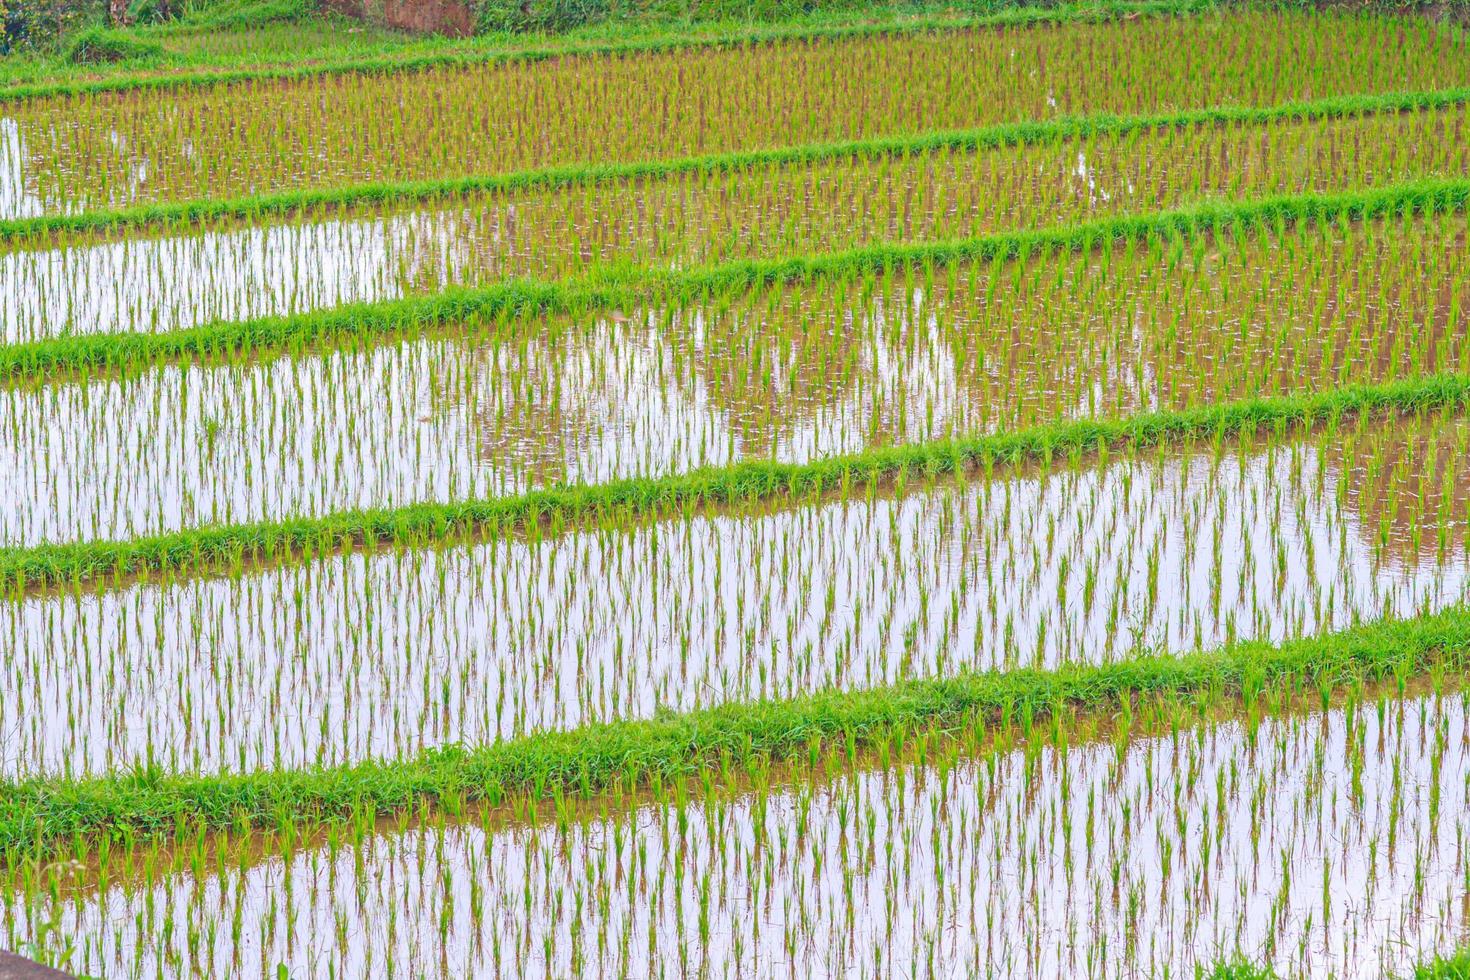 visie over- typisch rijst- terrassen Aan de eiland van Bali in Indonesië foto